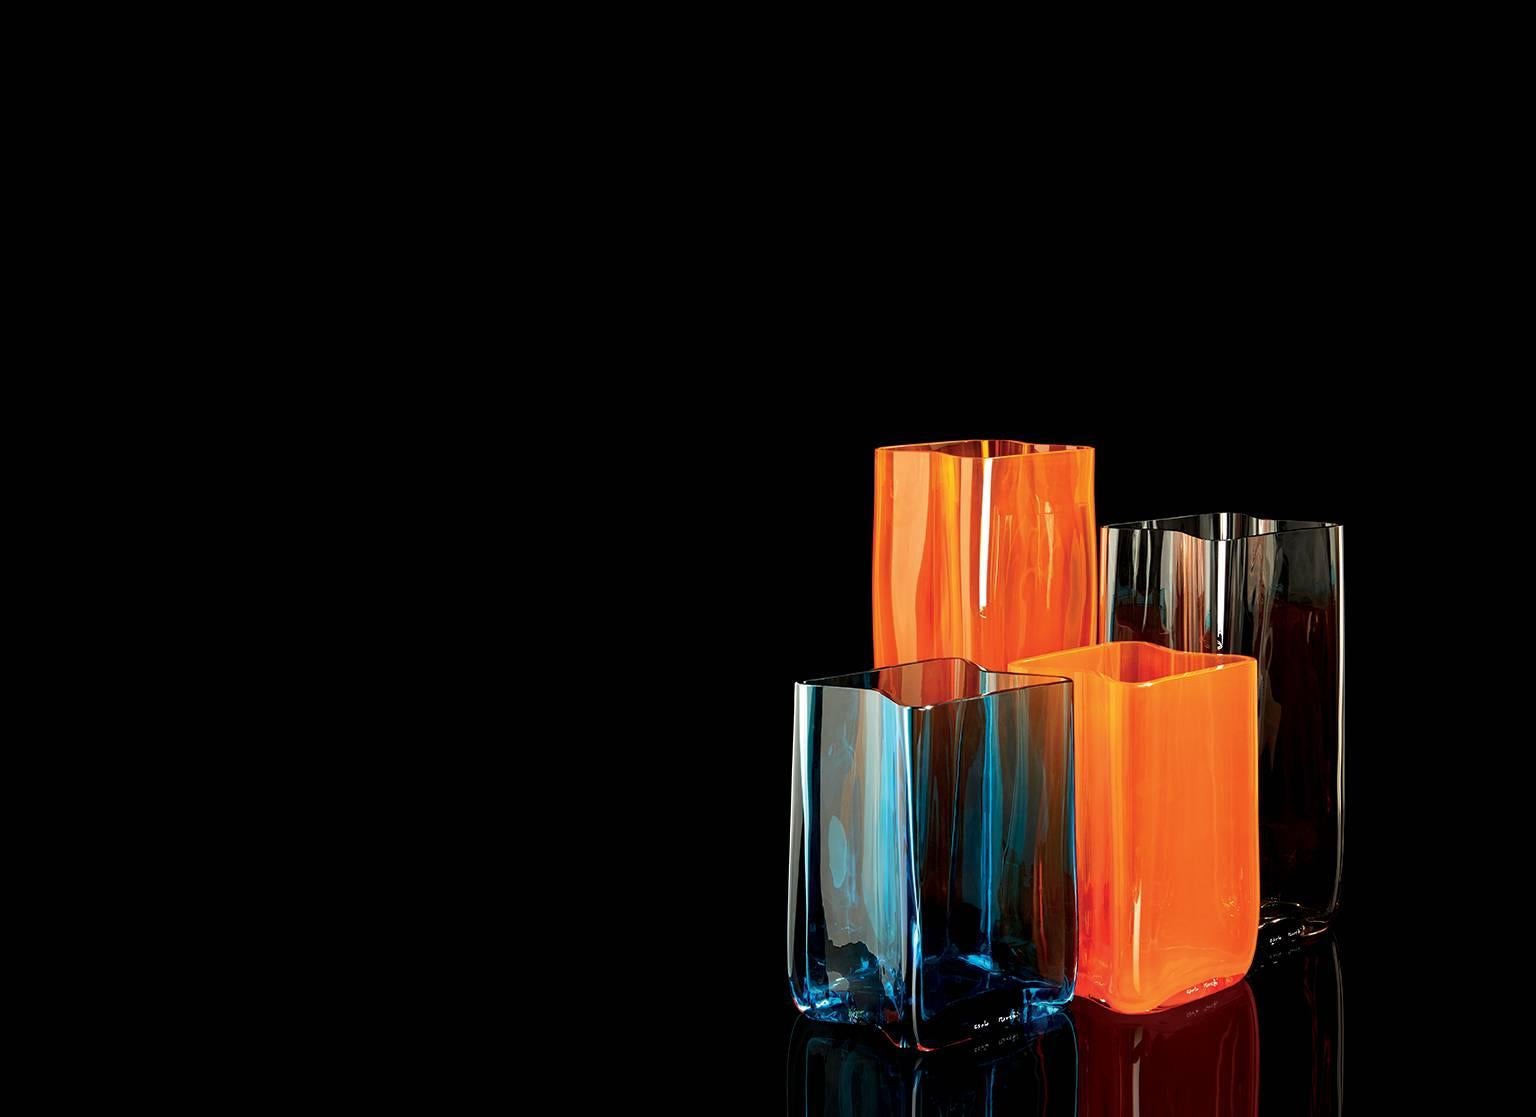 Vase contemporain Carlo Moretti Bosco en verre de Murano soufflé à la bouche, de couleur violette.

Les vases Bosco peuvent être combinés harmonieusement dans différentes couleurs et